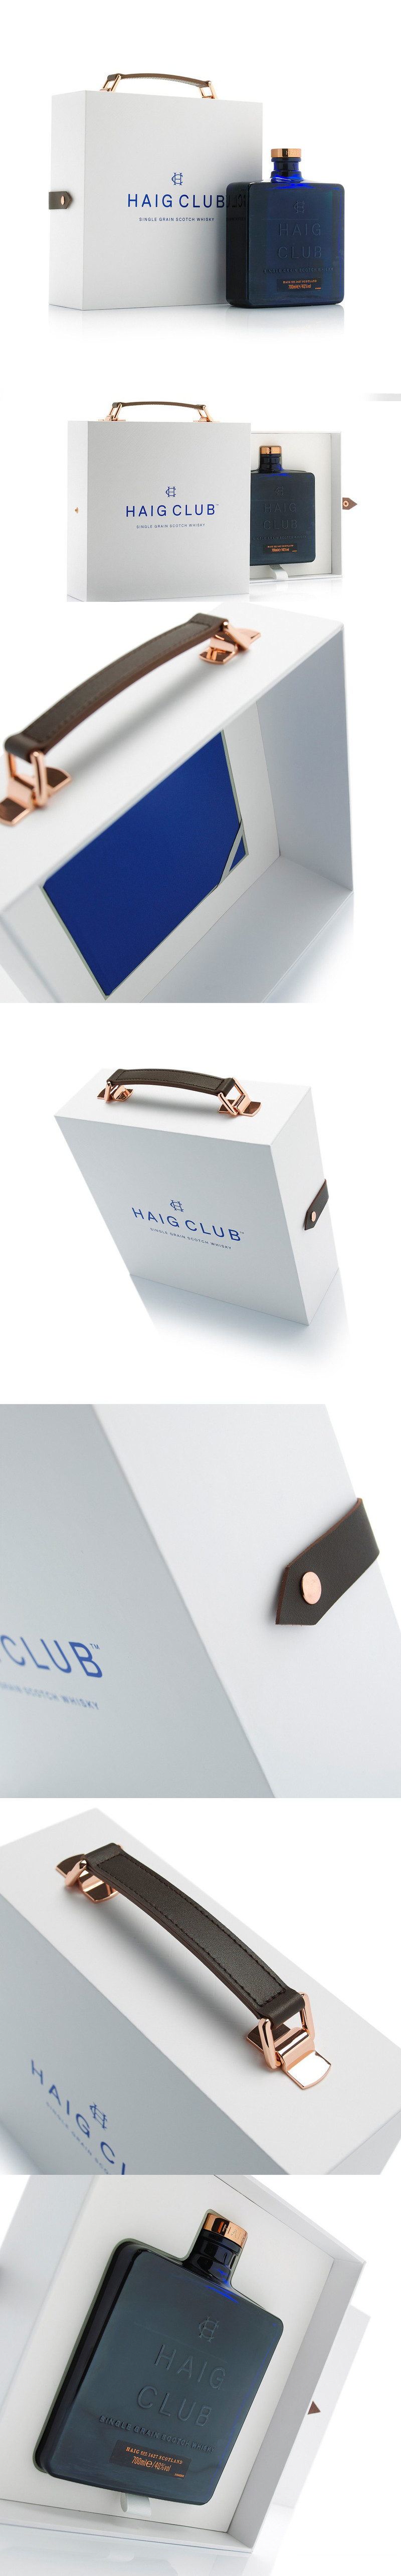 HALG CLUB酒盒